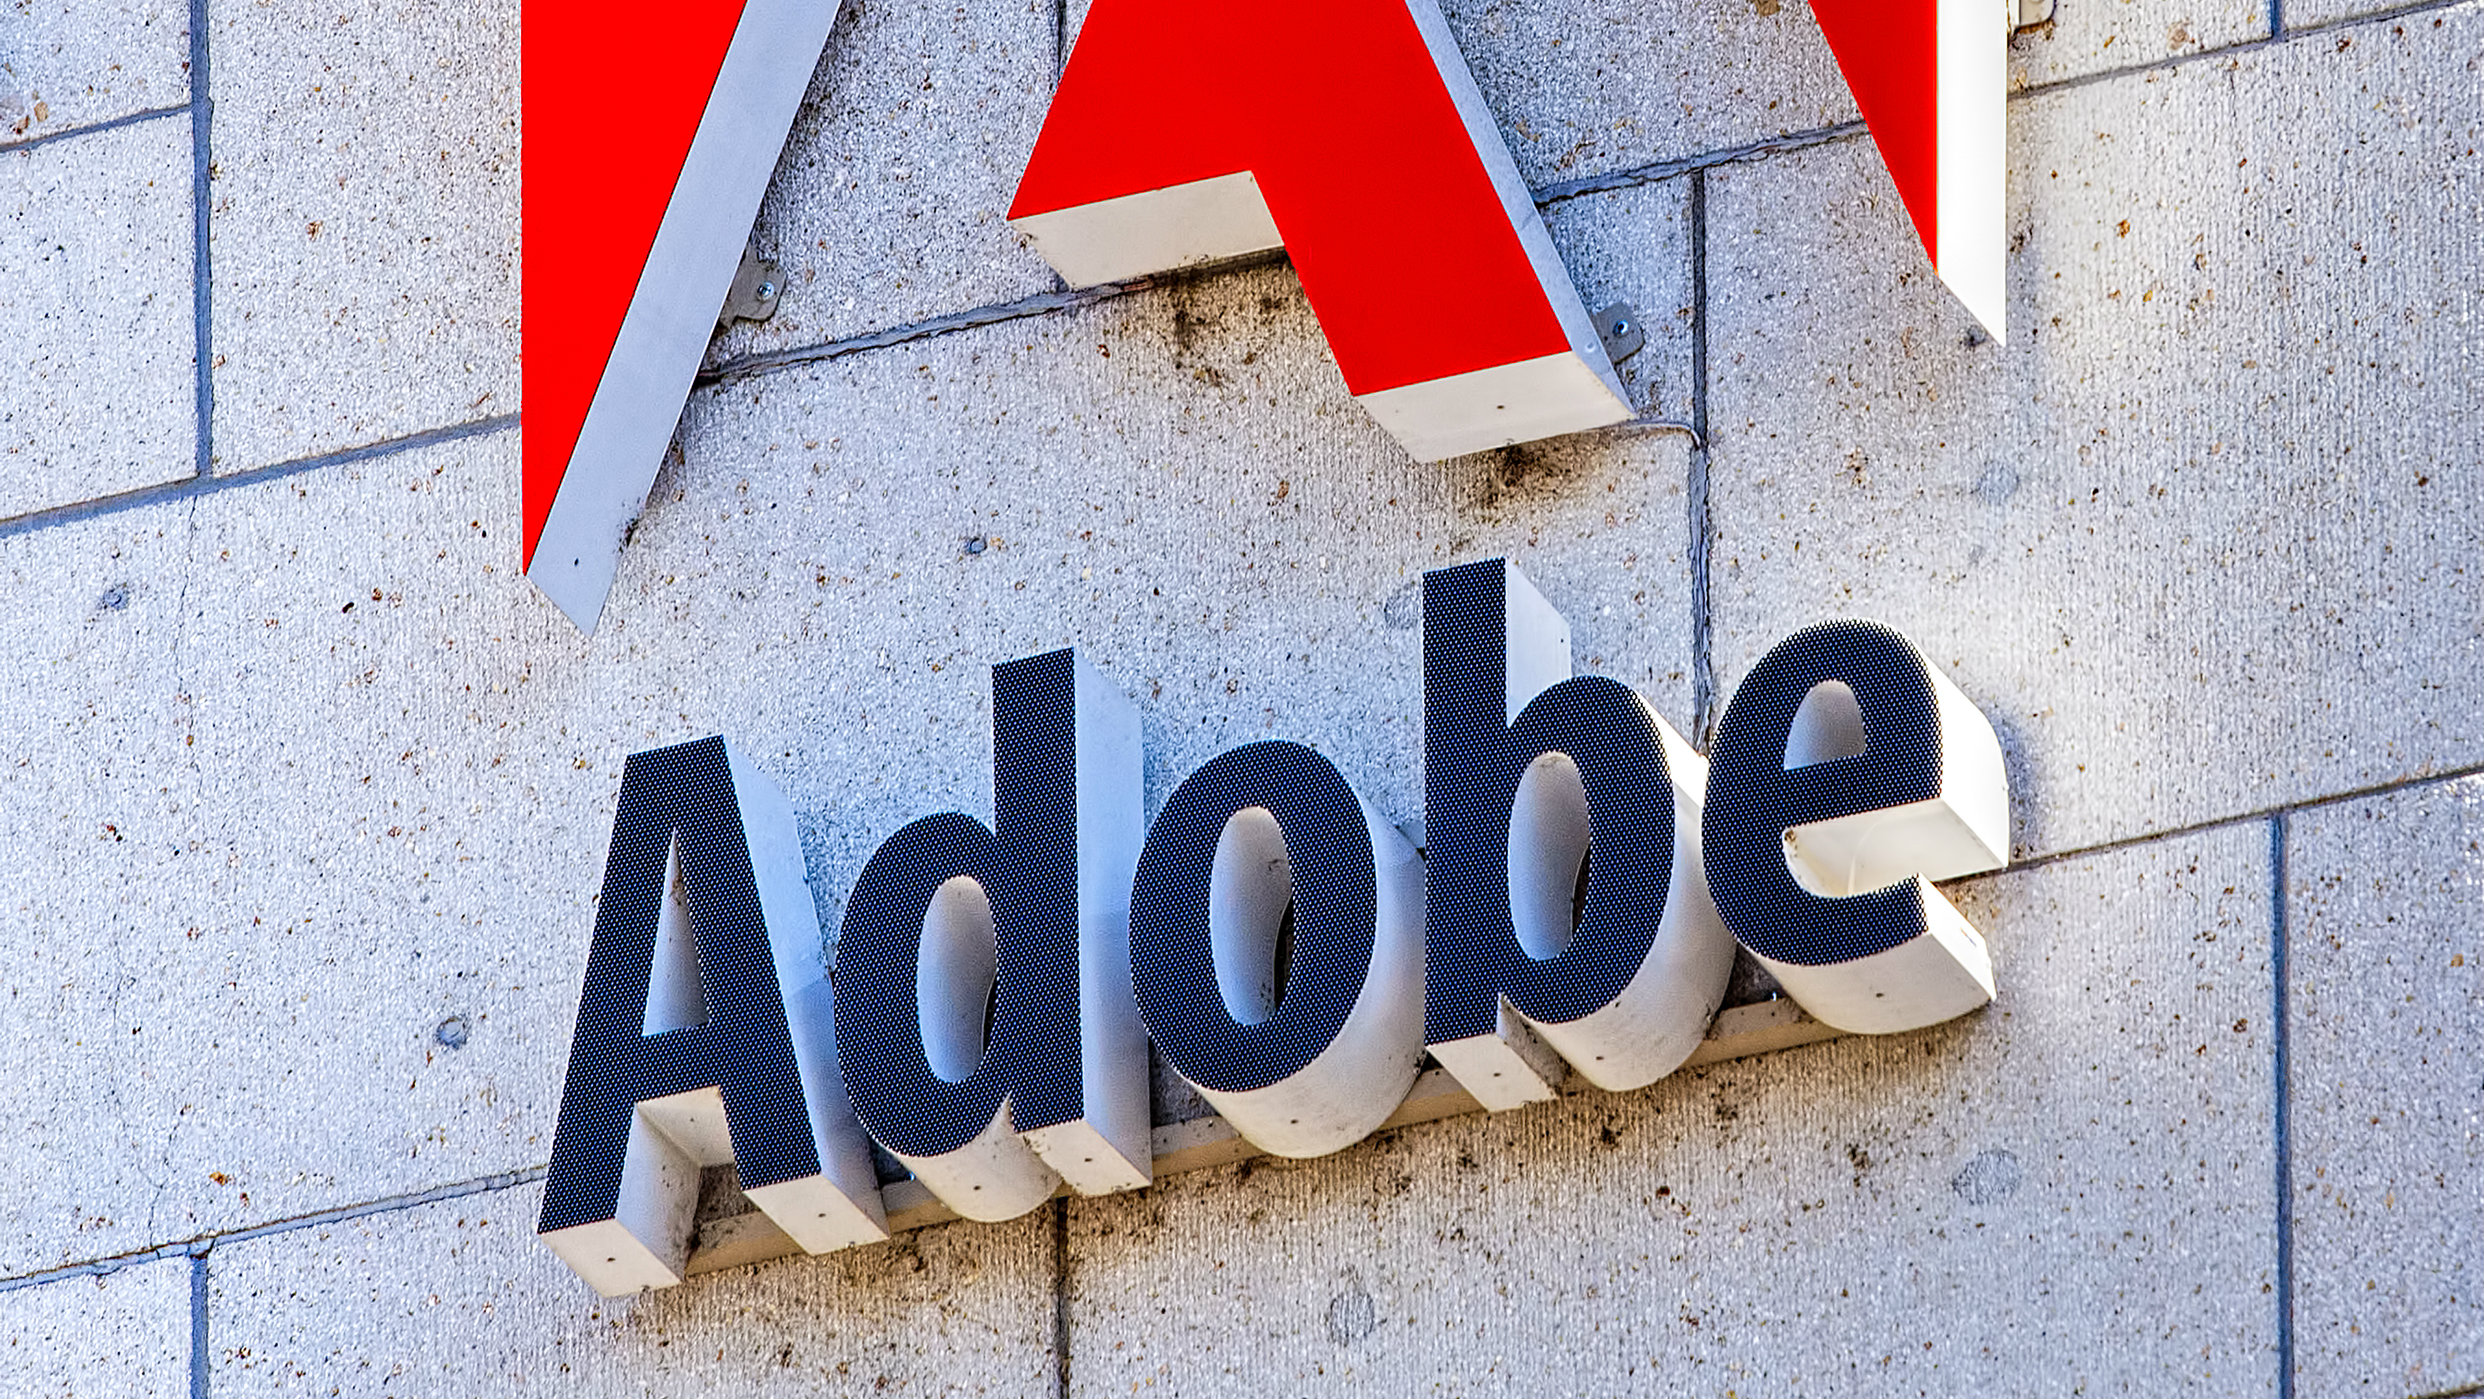 Adobe Flash ist fast tot, da 95 % der Websites die Software vor ihrer Einstellung aufgeben